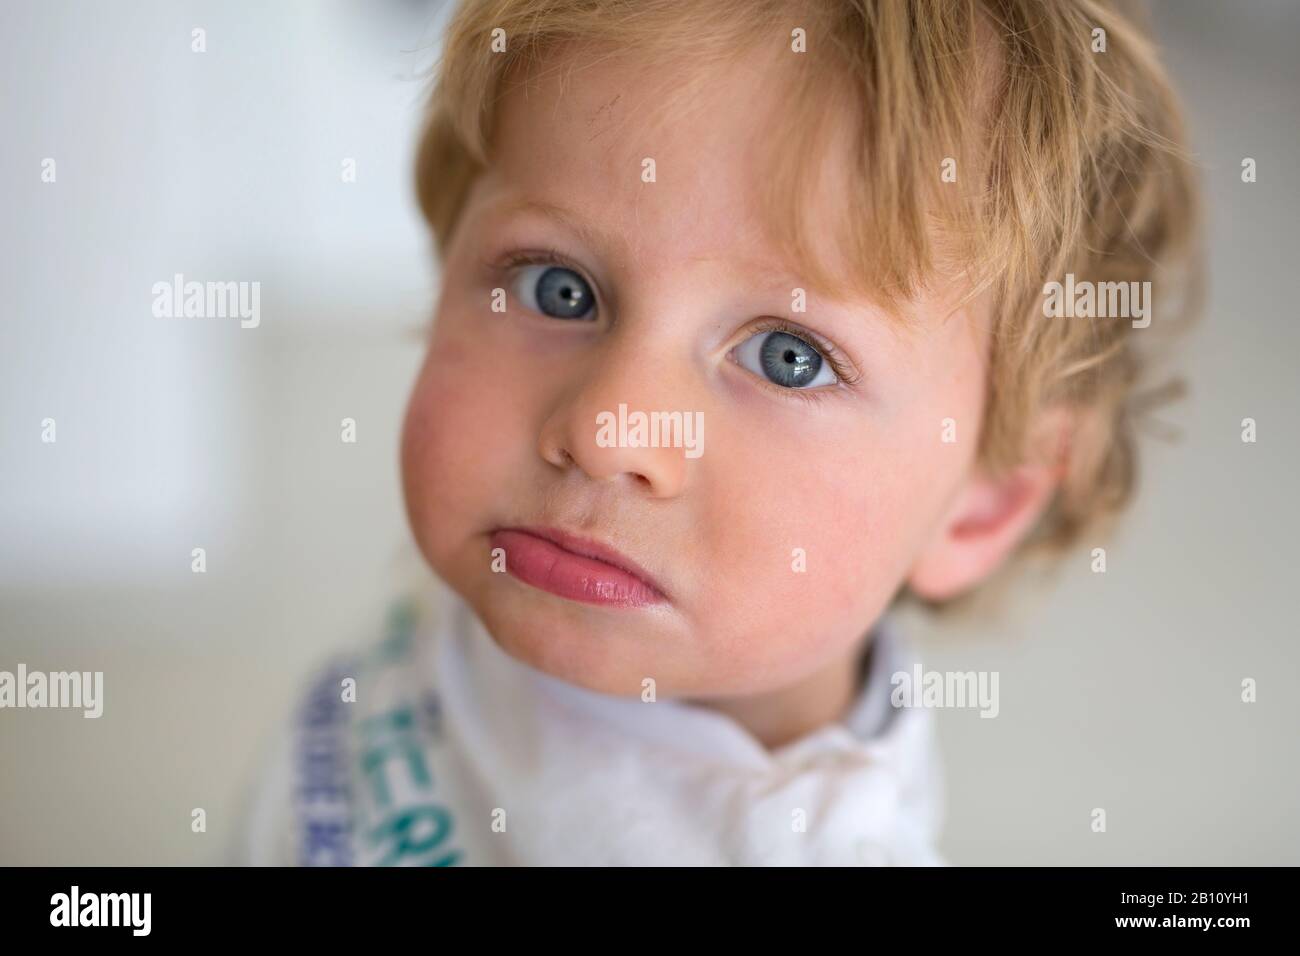 Little boy, portrait Stock Photo